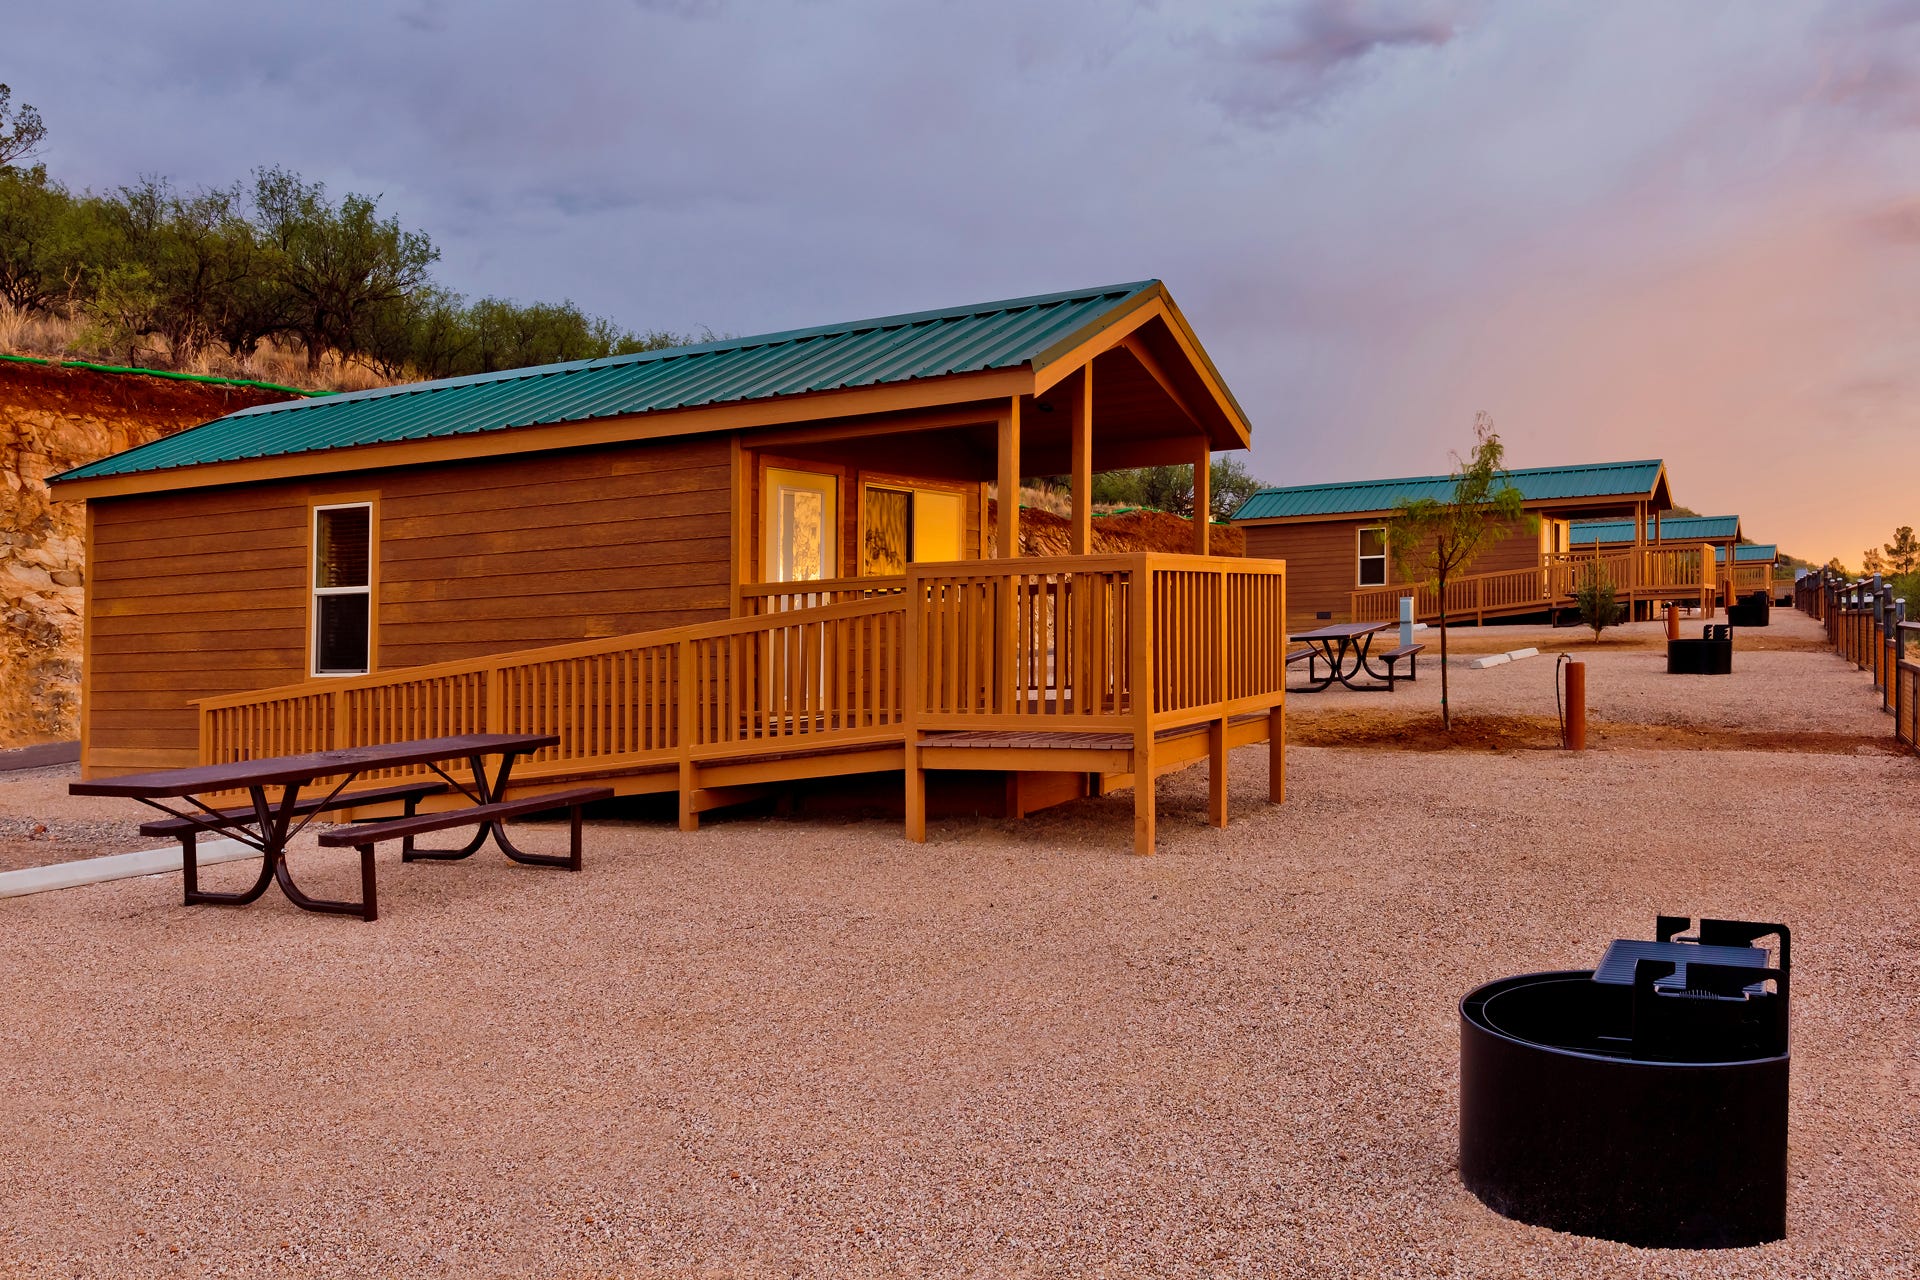 Hvordan vægt Bemærkelsesværdig 2 Arizona state parks add camping cabins